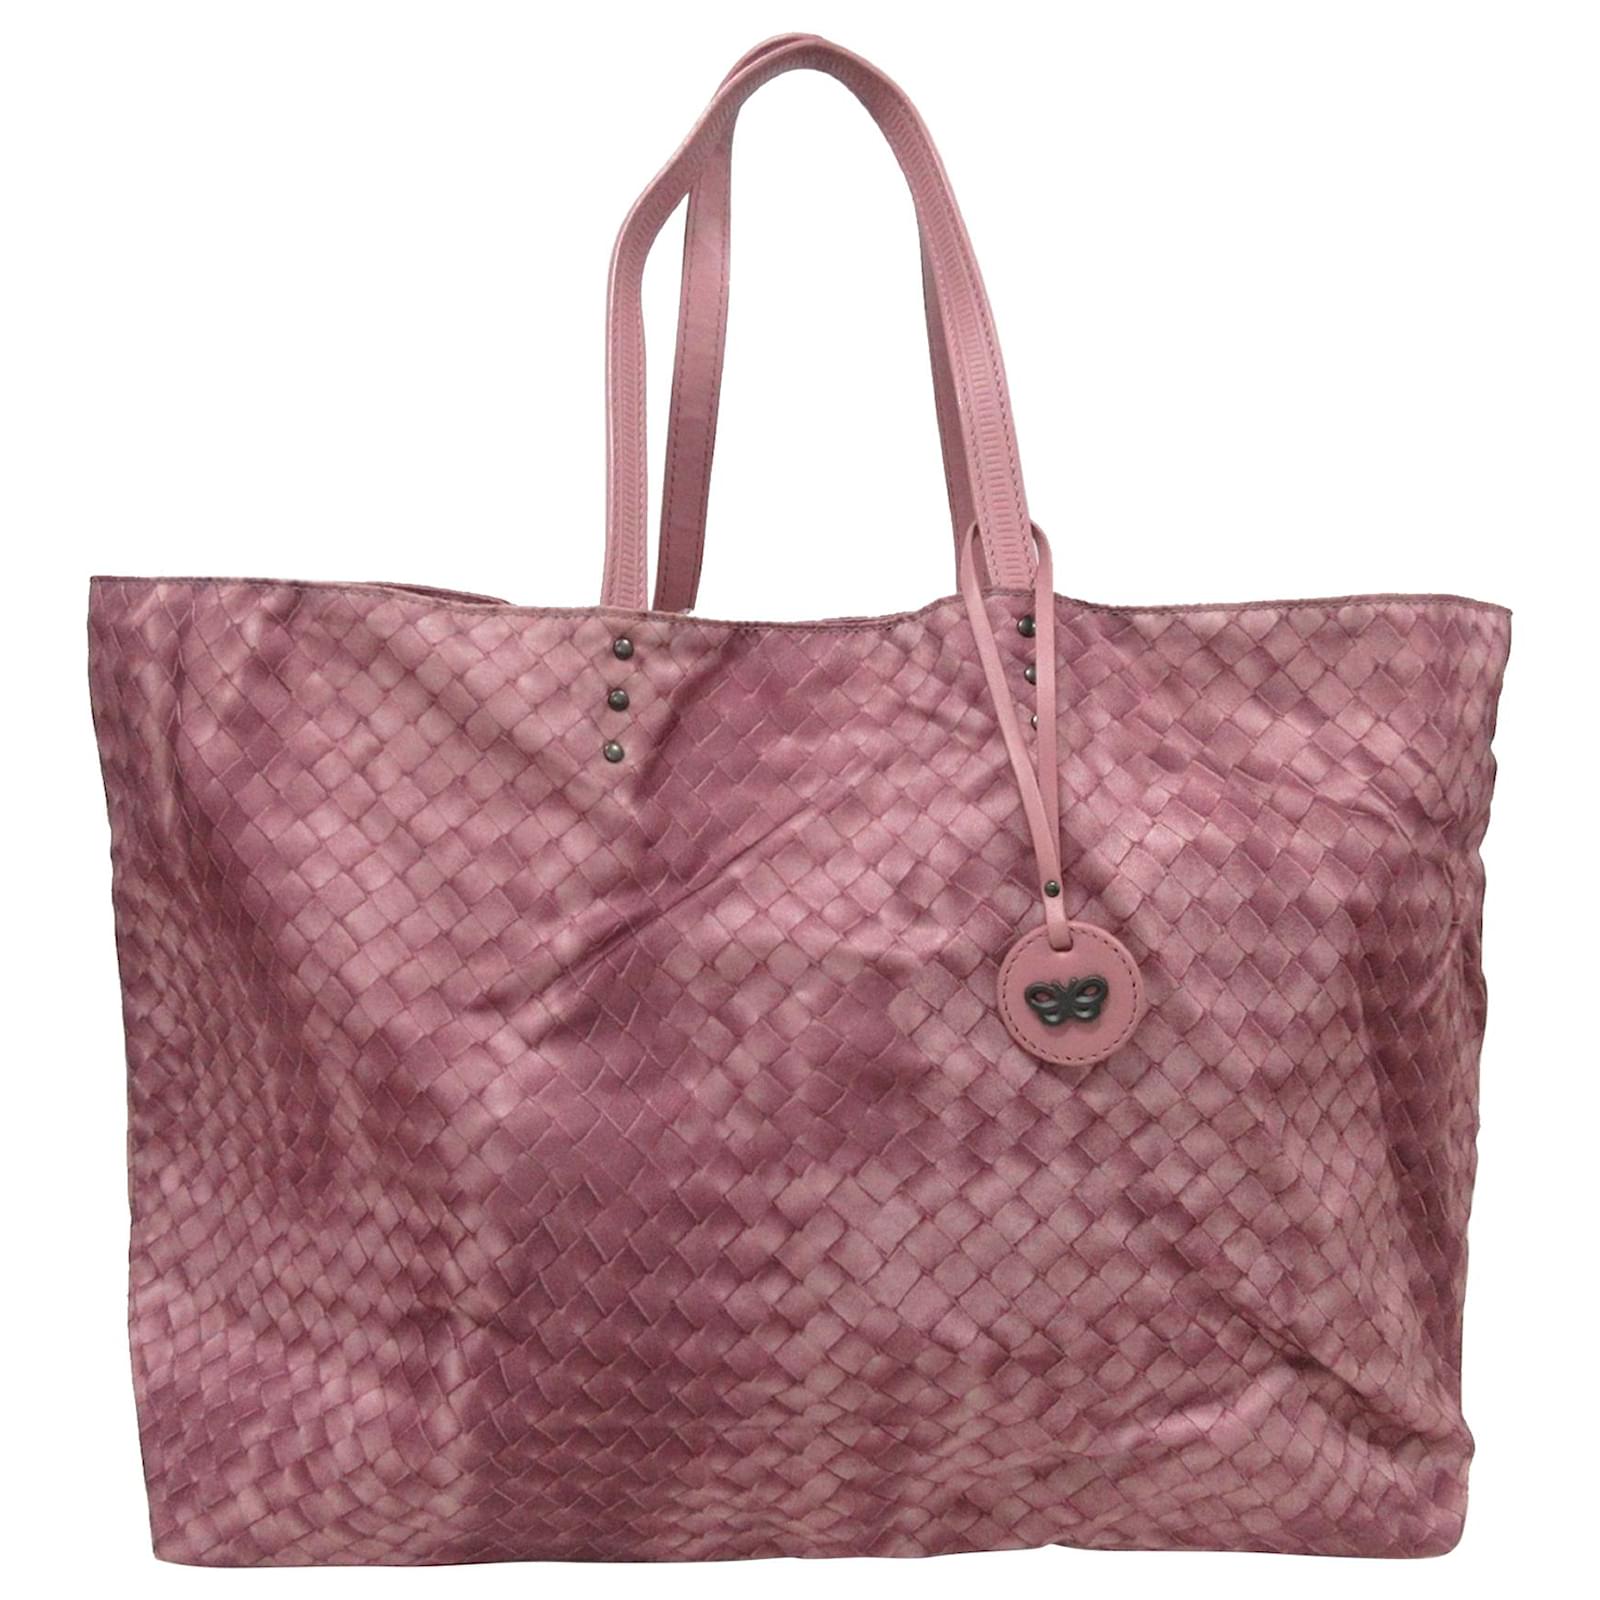 Bottega Veneta Pink Intrecciolusion Nylon Tote Bag Leather Pony-style ...